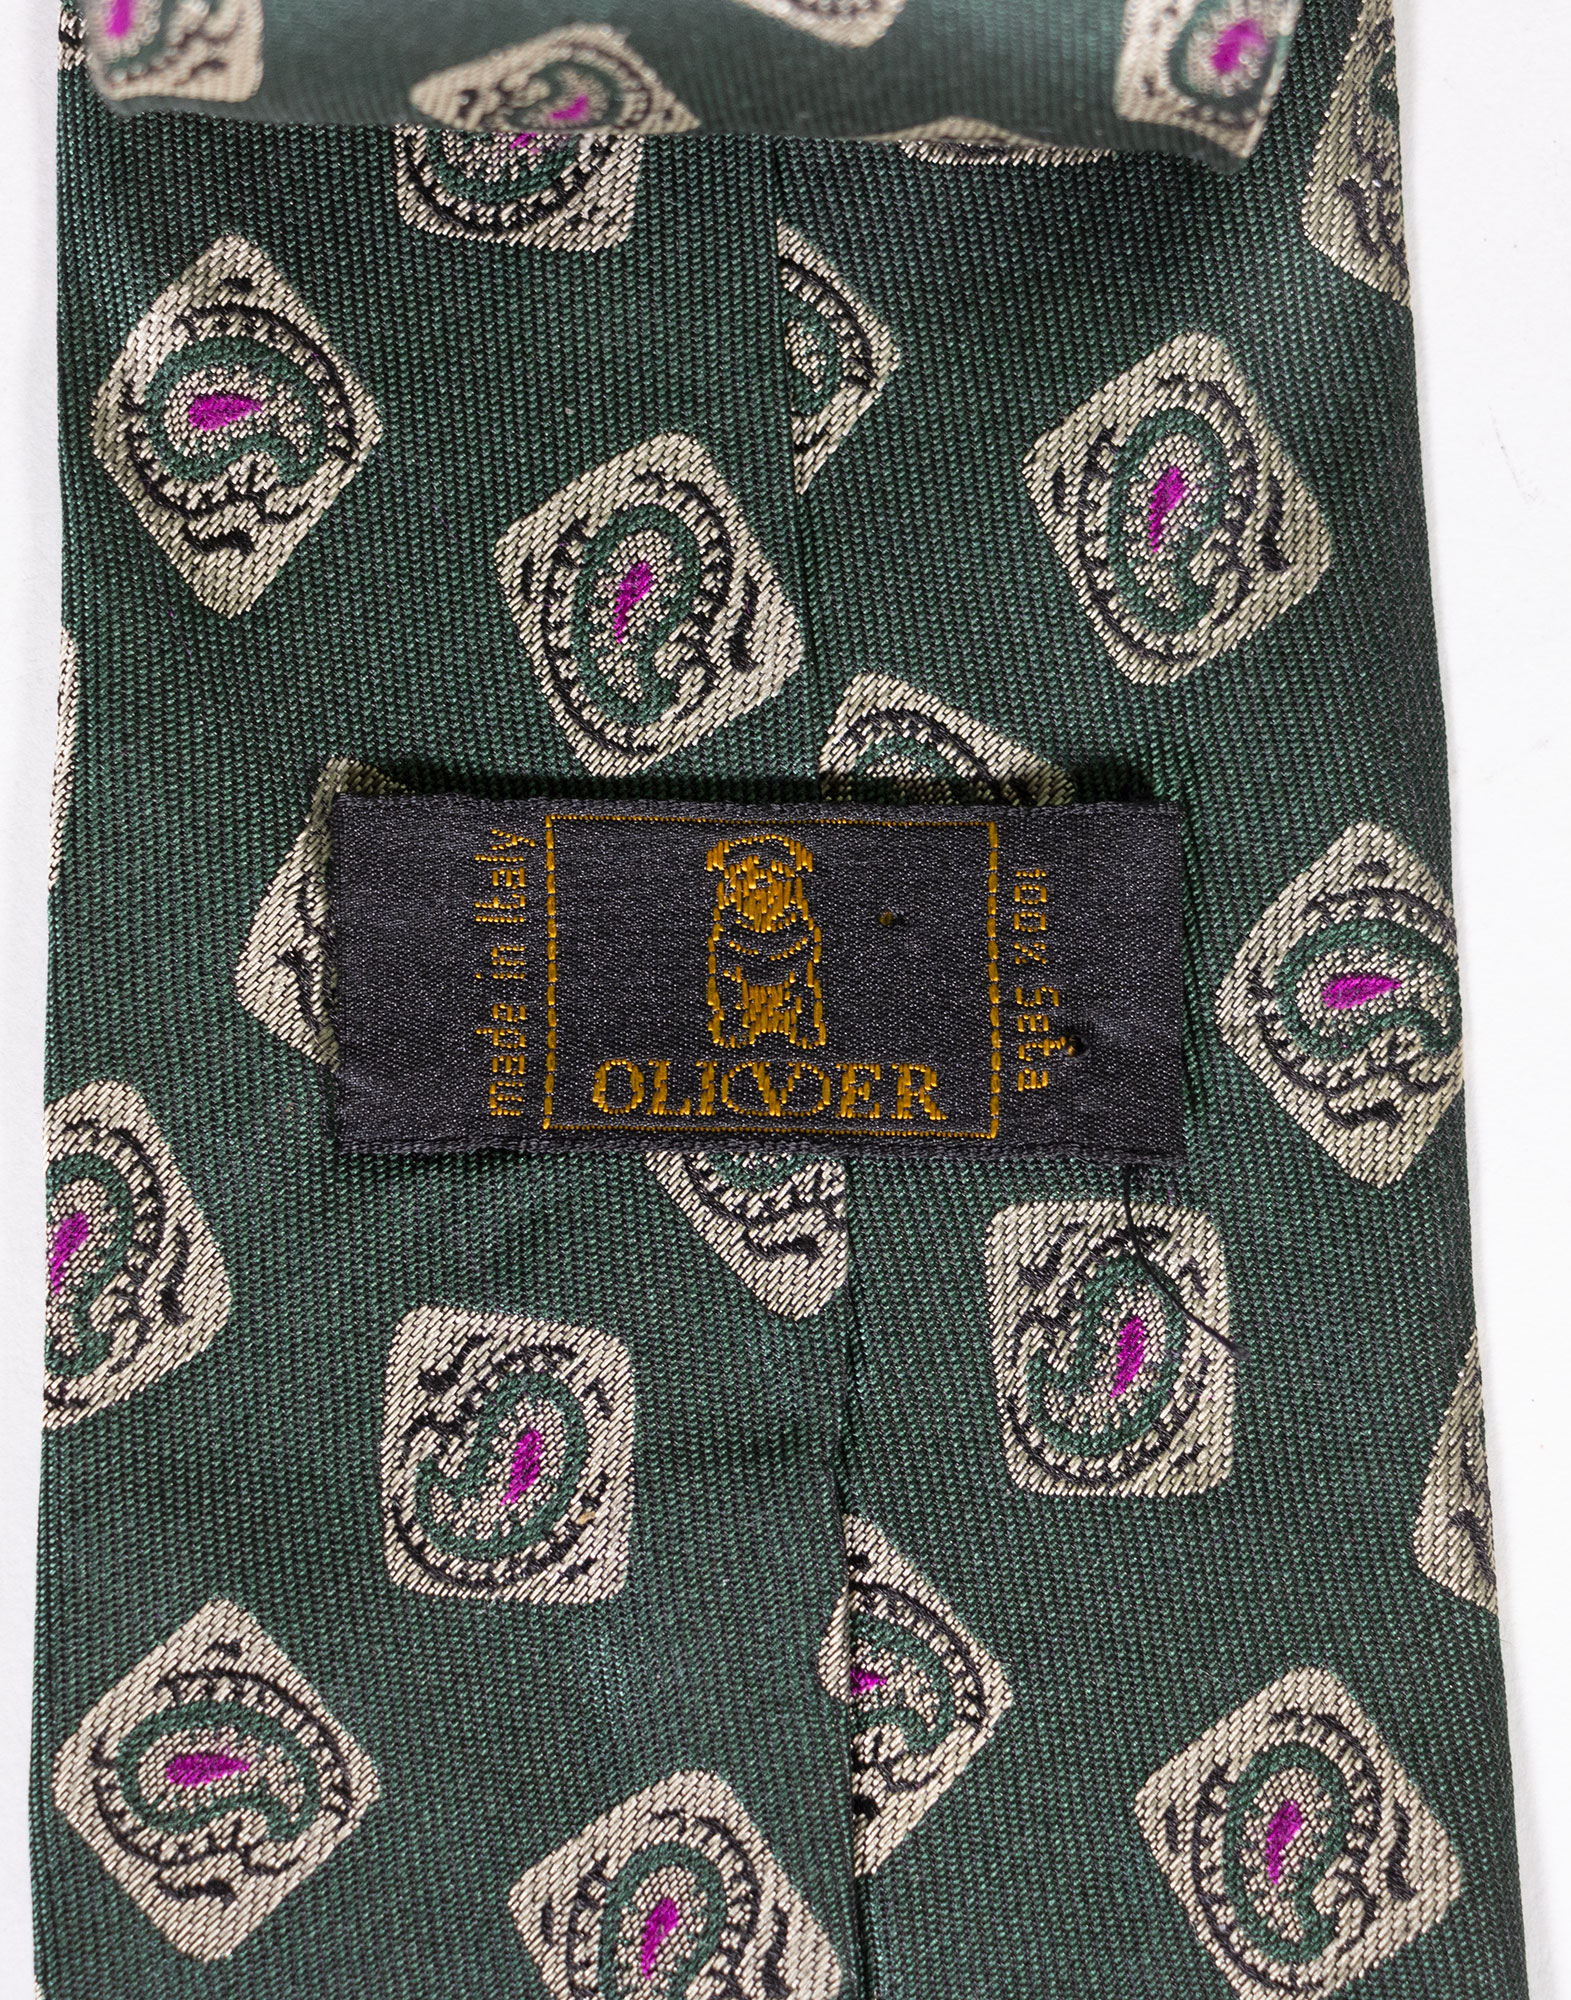 Oliver - 90s Necktie